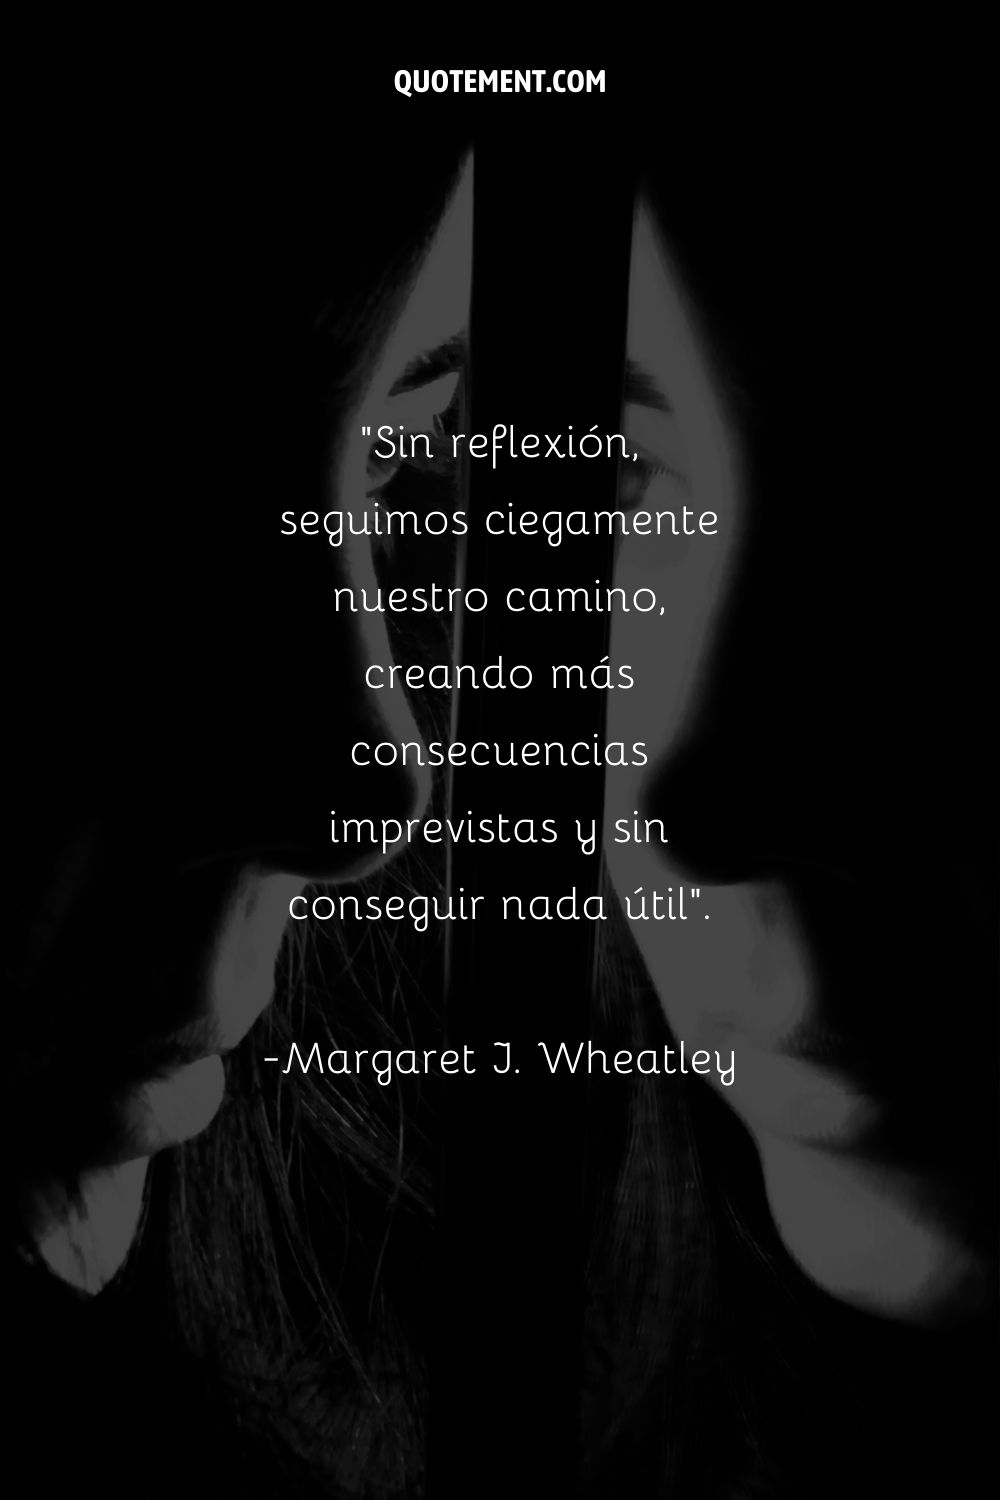 Una foto en blanco y negro del rostro de una mujer, medio velado en la oscuridad, que subraya el tema de la reflexión.